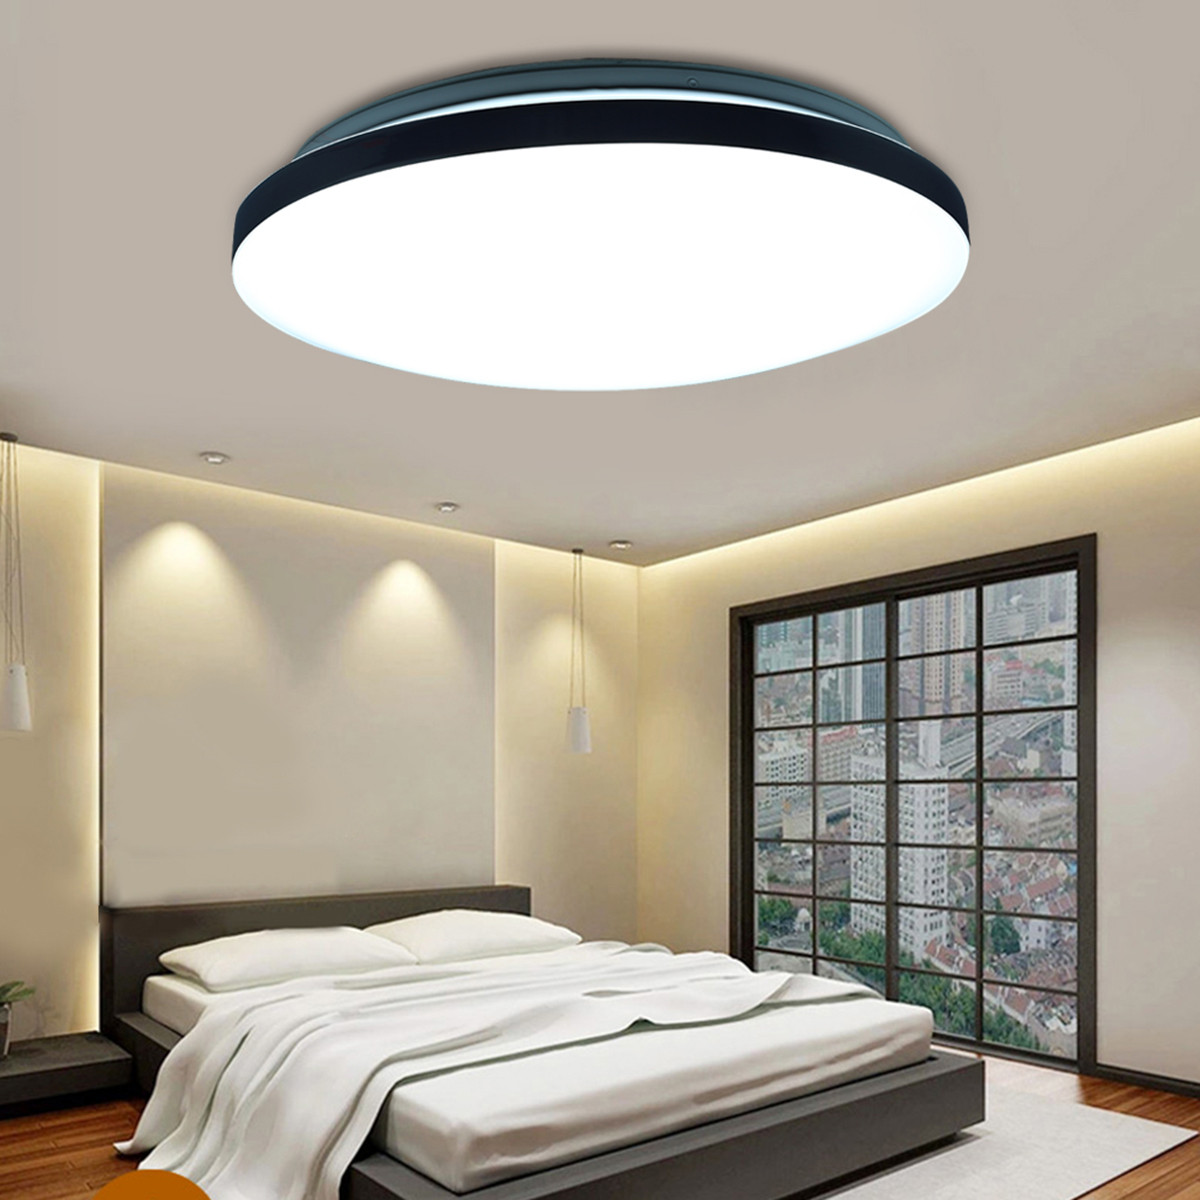 Bedroom Flush Mount Light
 18W Round LED Ceiling Light Fixture Lighting Flush Mount